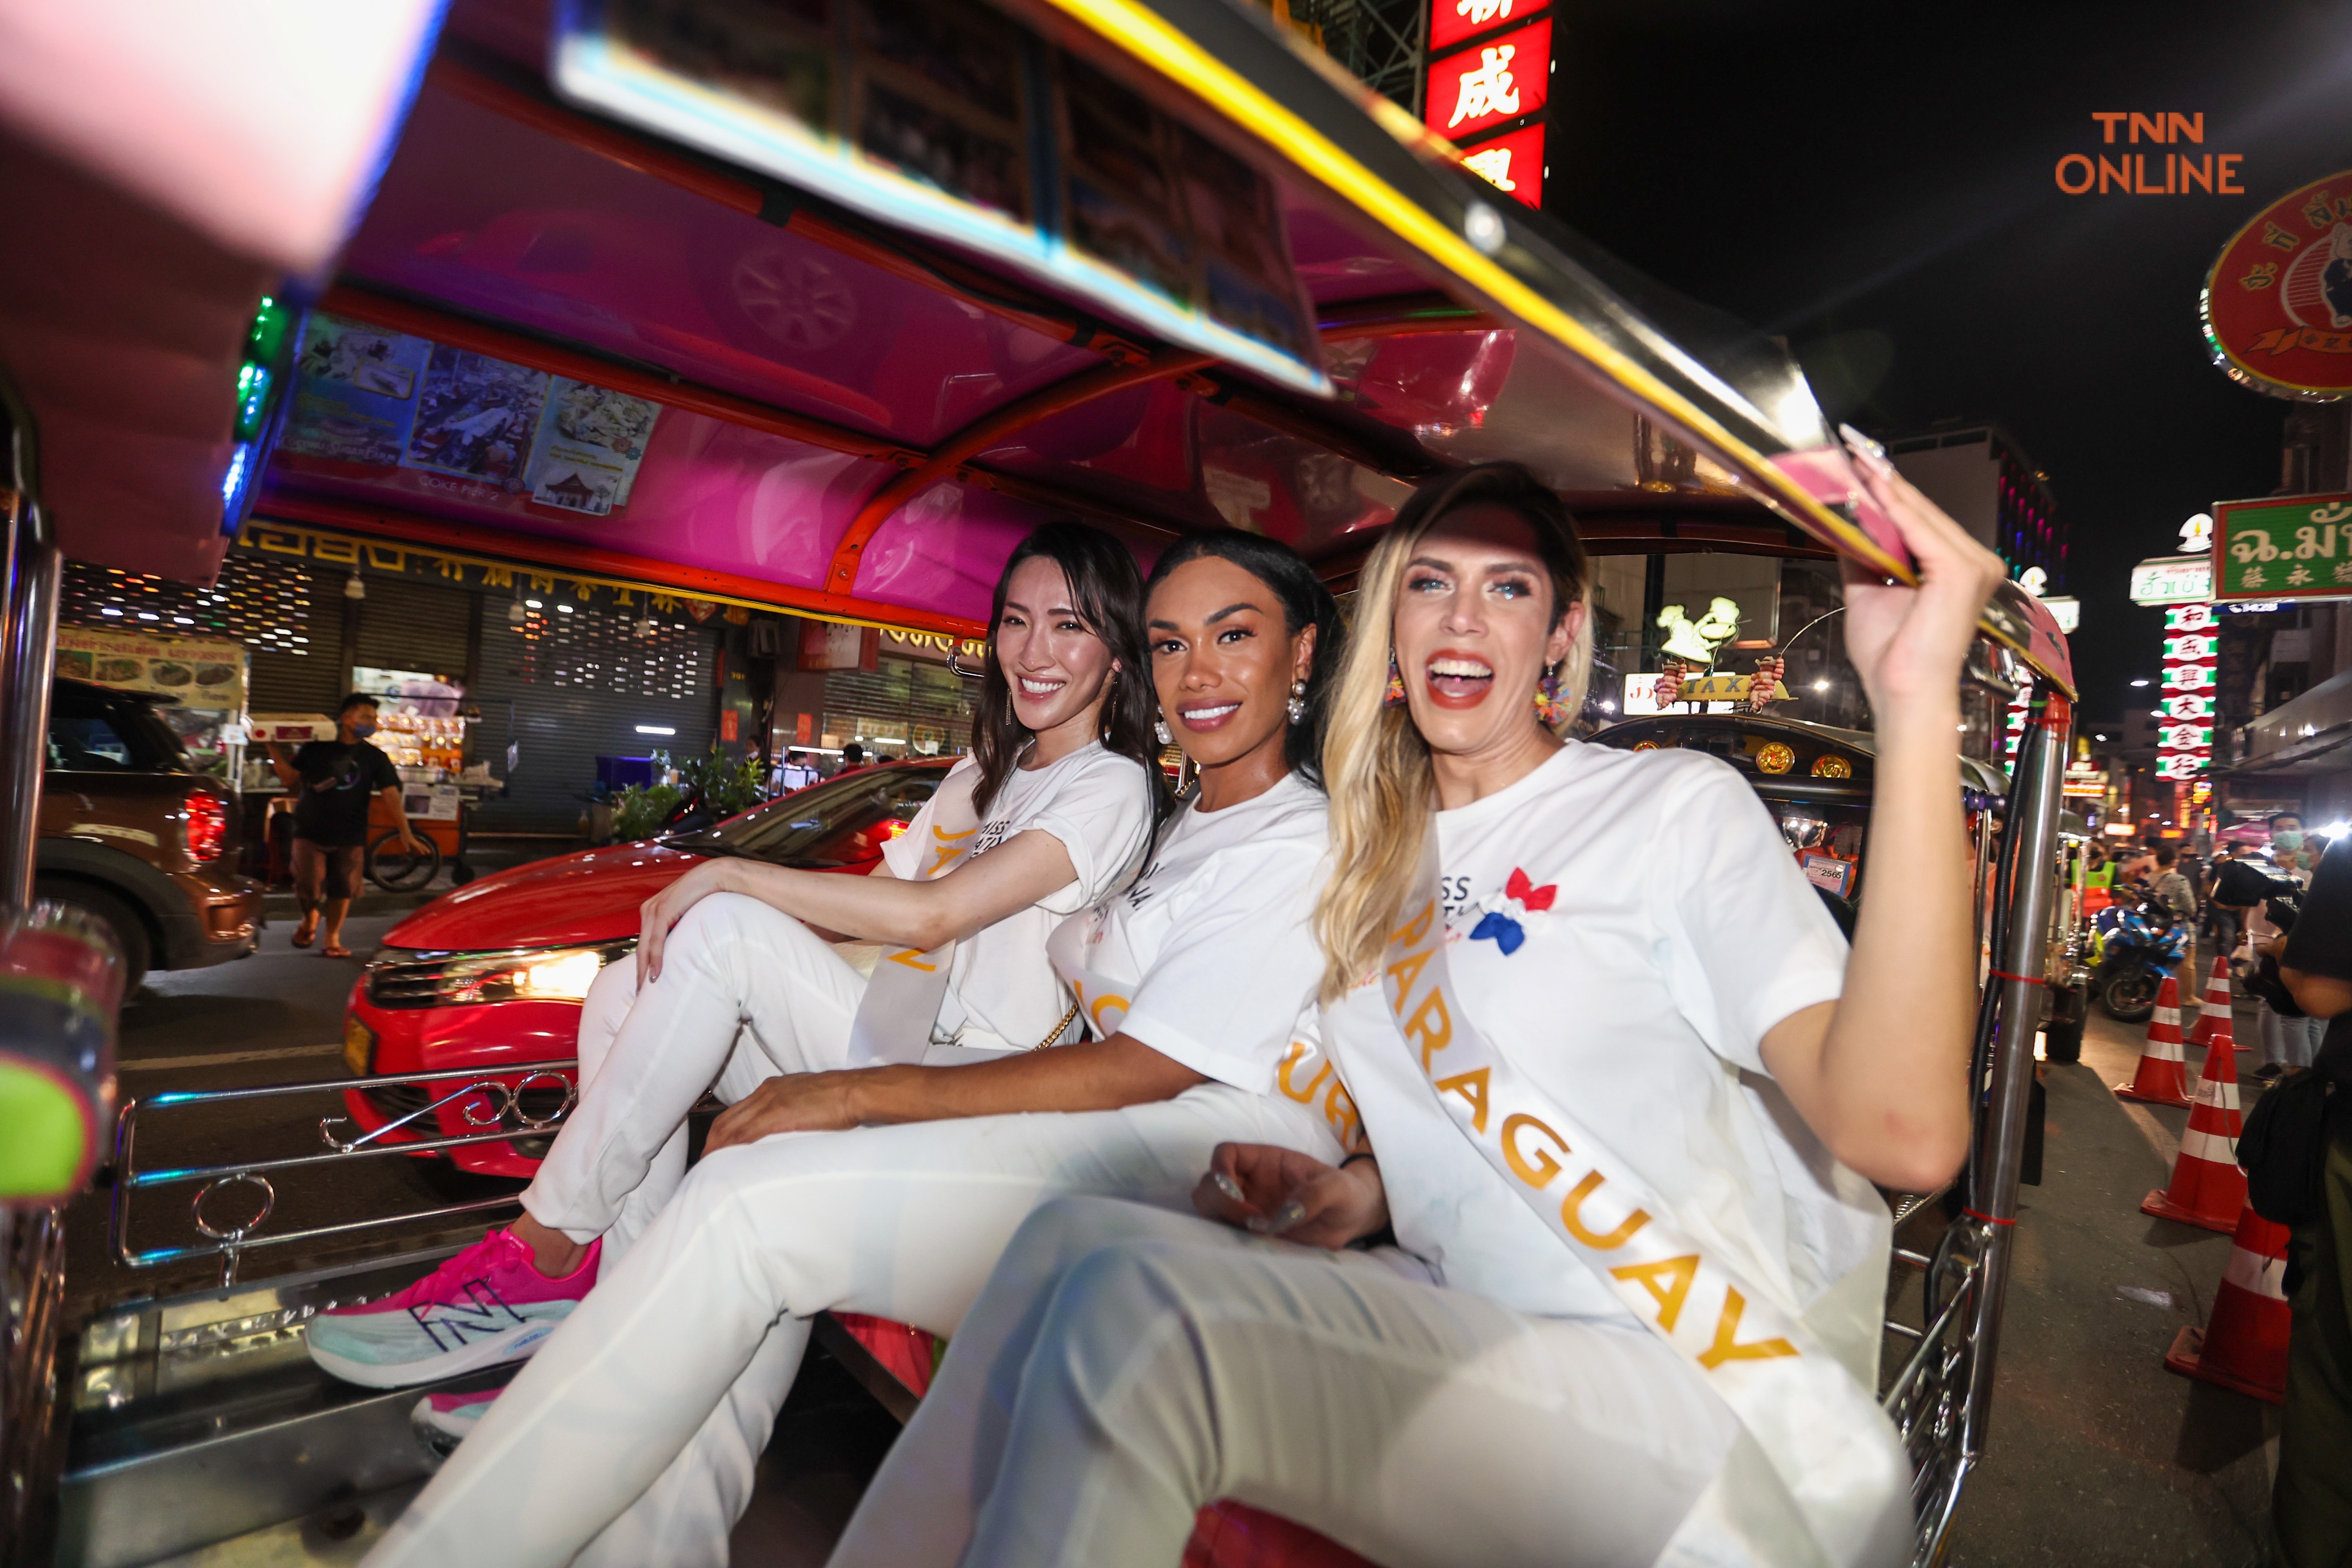 ประมวลภาพ Miss International Queen 2022 ลิ้มรส Street food เยาวราชแหล่งท่องเที่ยวที่ดังไปทั่วโลก